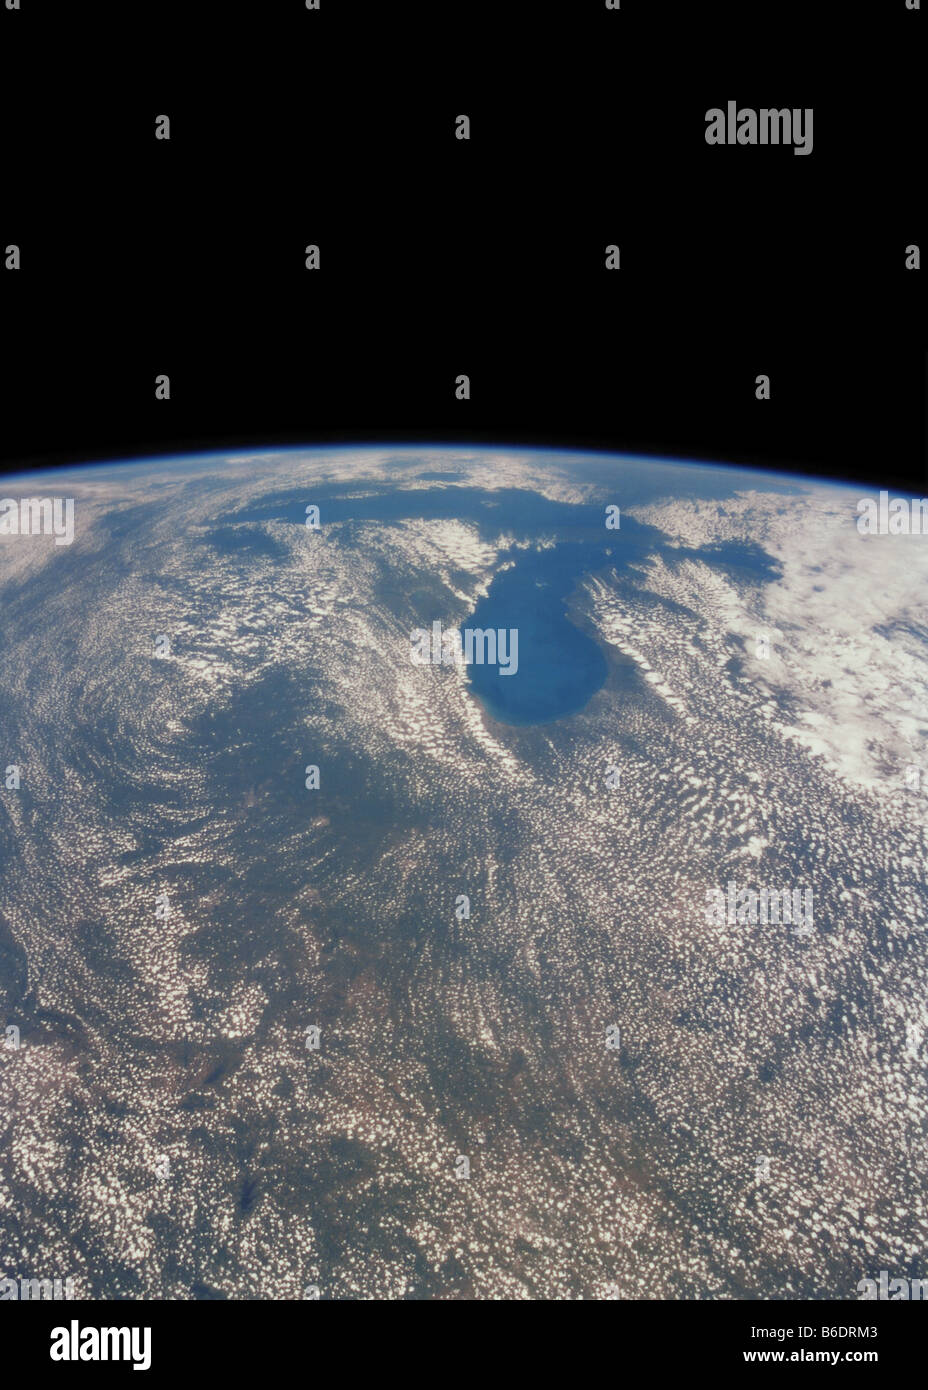 Grandi laghi in USA/Canada frontiera, visto dallo spazio. I grandi laghi coprono un area di quasi 250.000 chilometri quadrati. Foto Stock